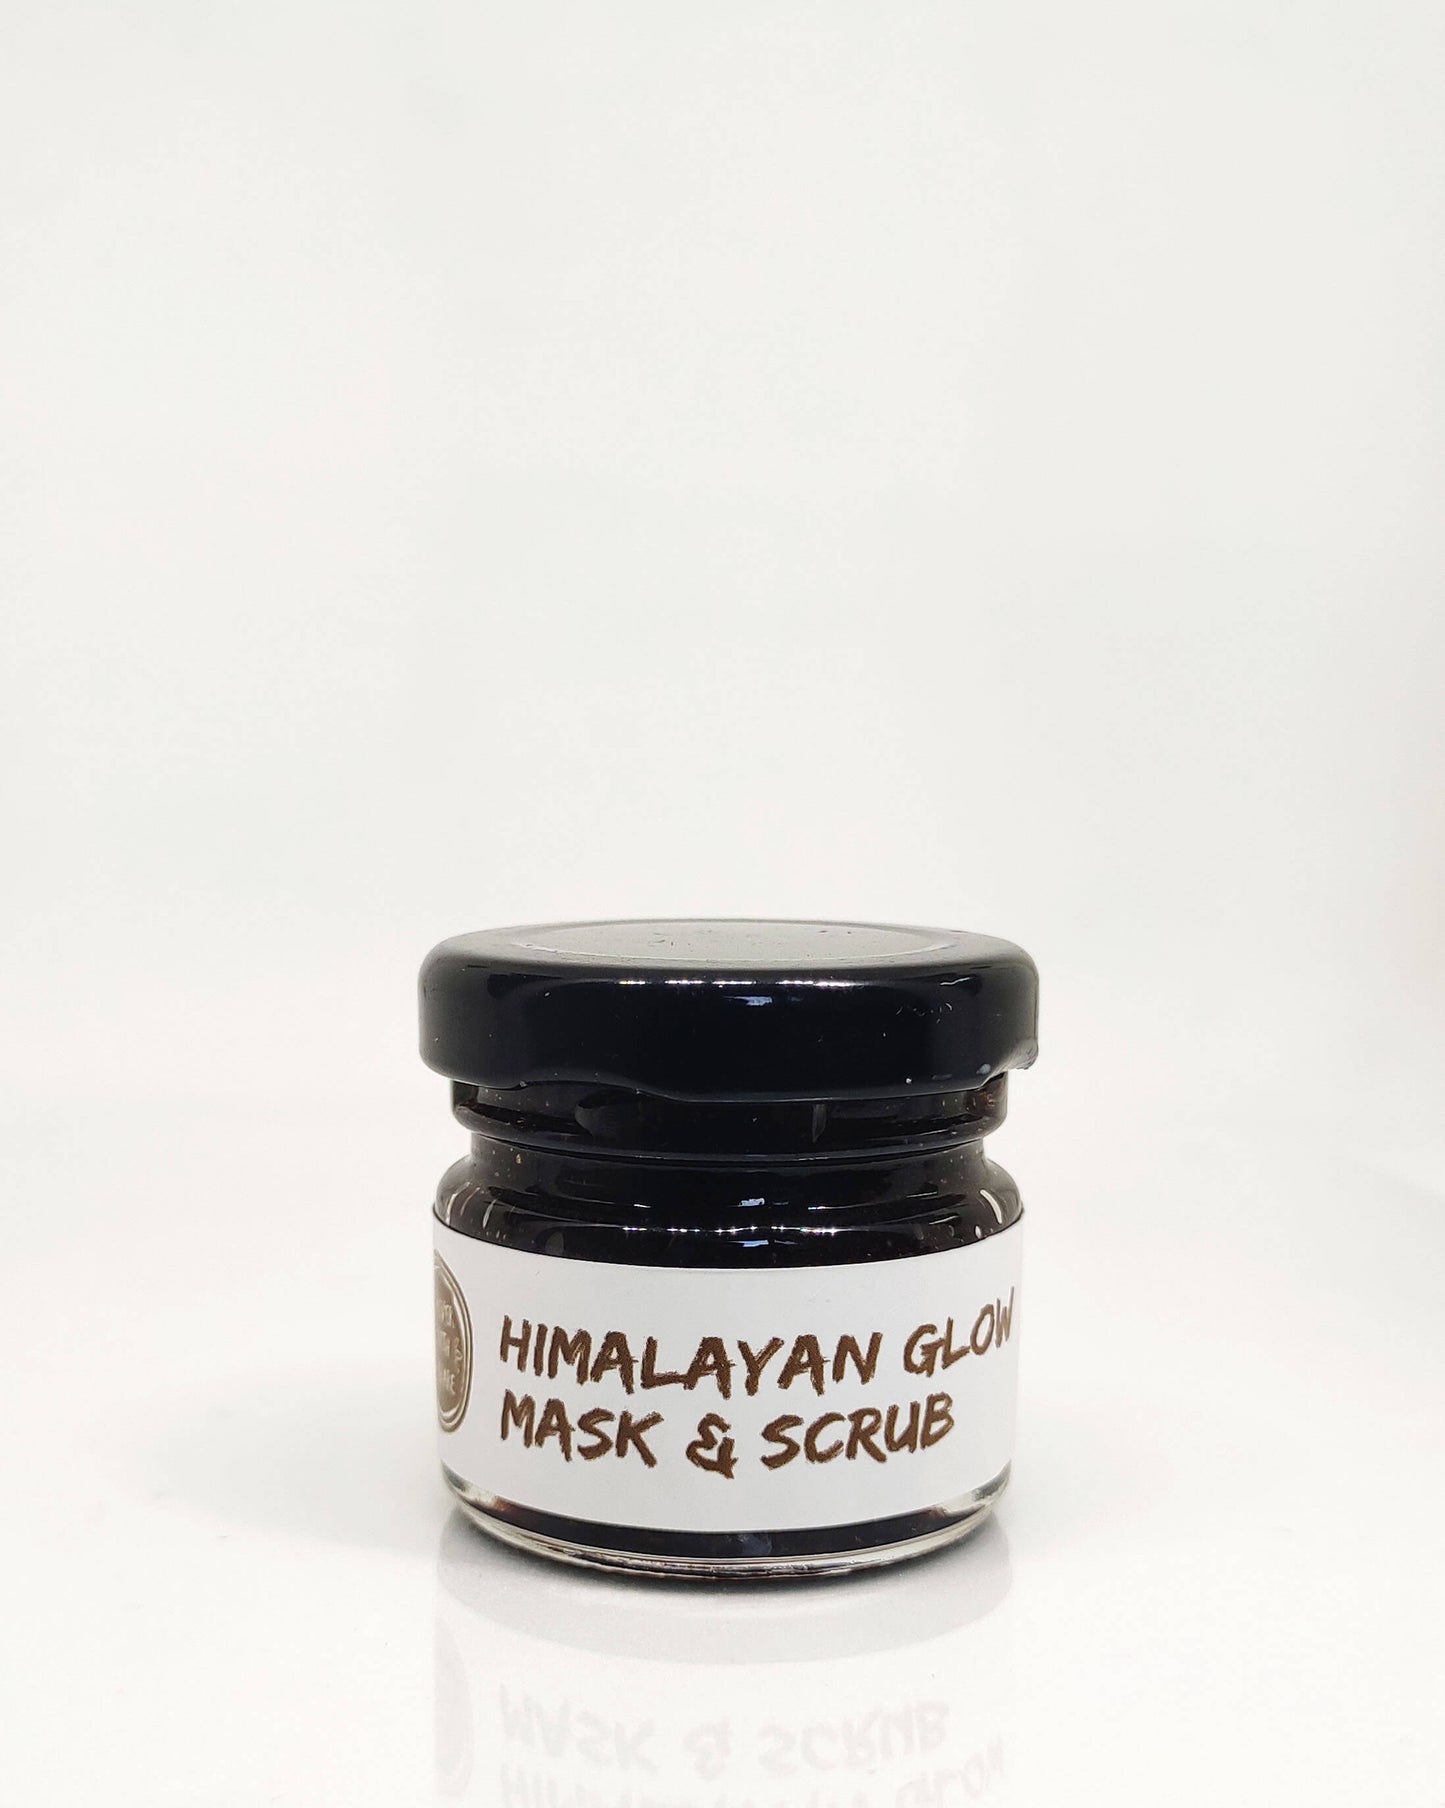 Himalayan Glow Mask & Scrub